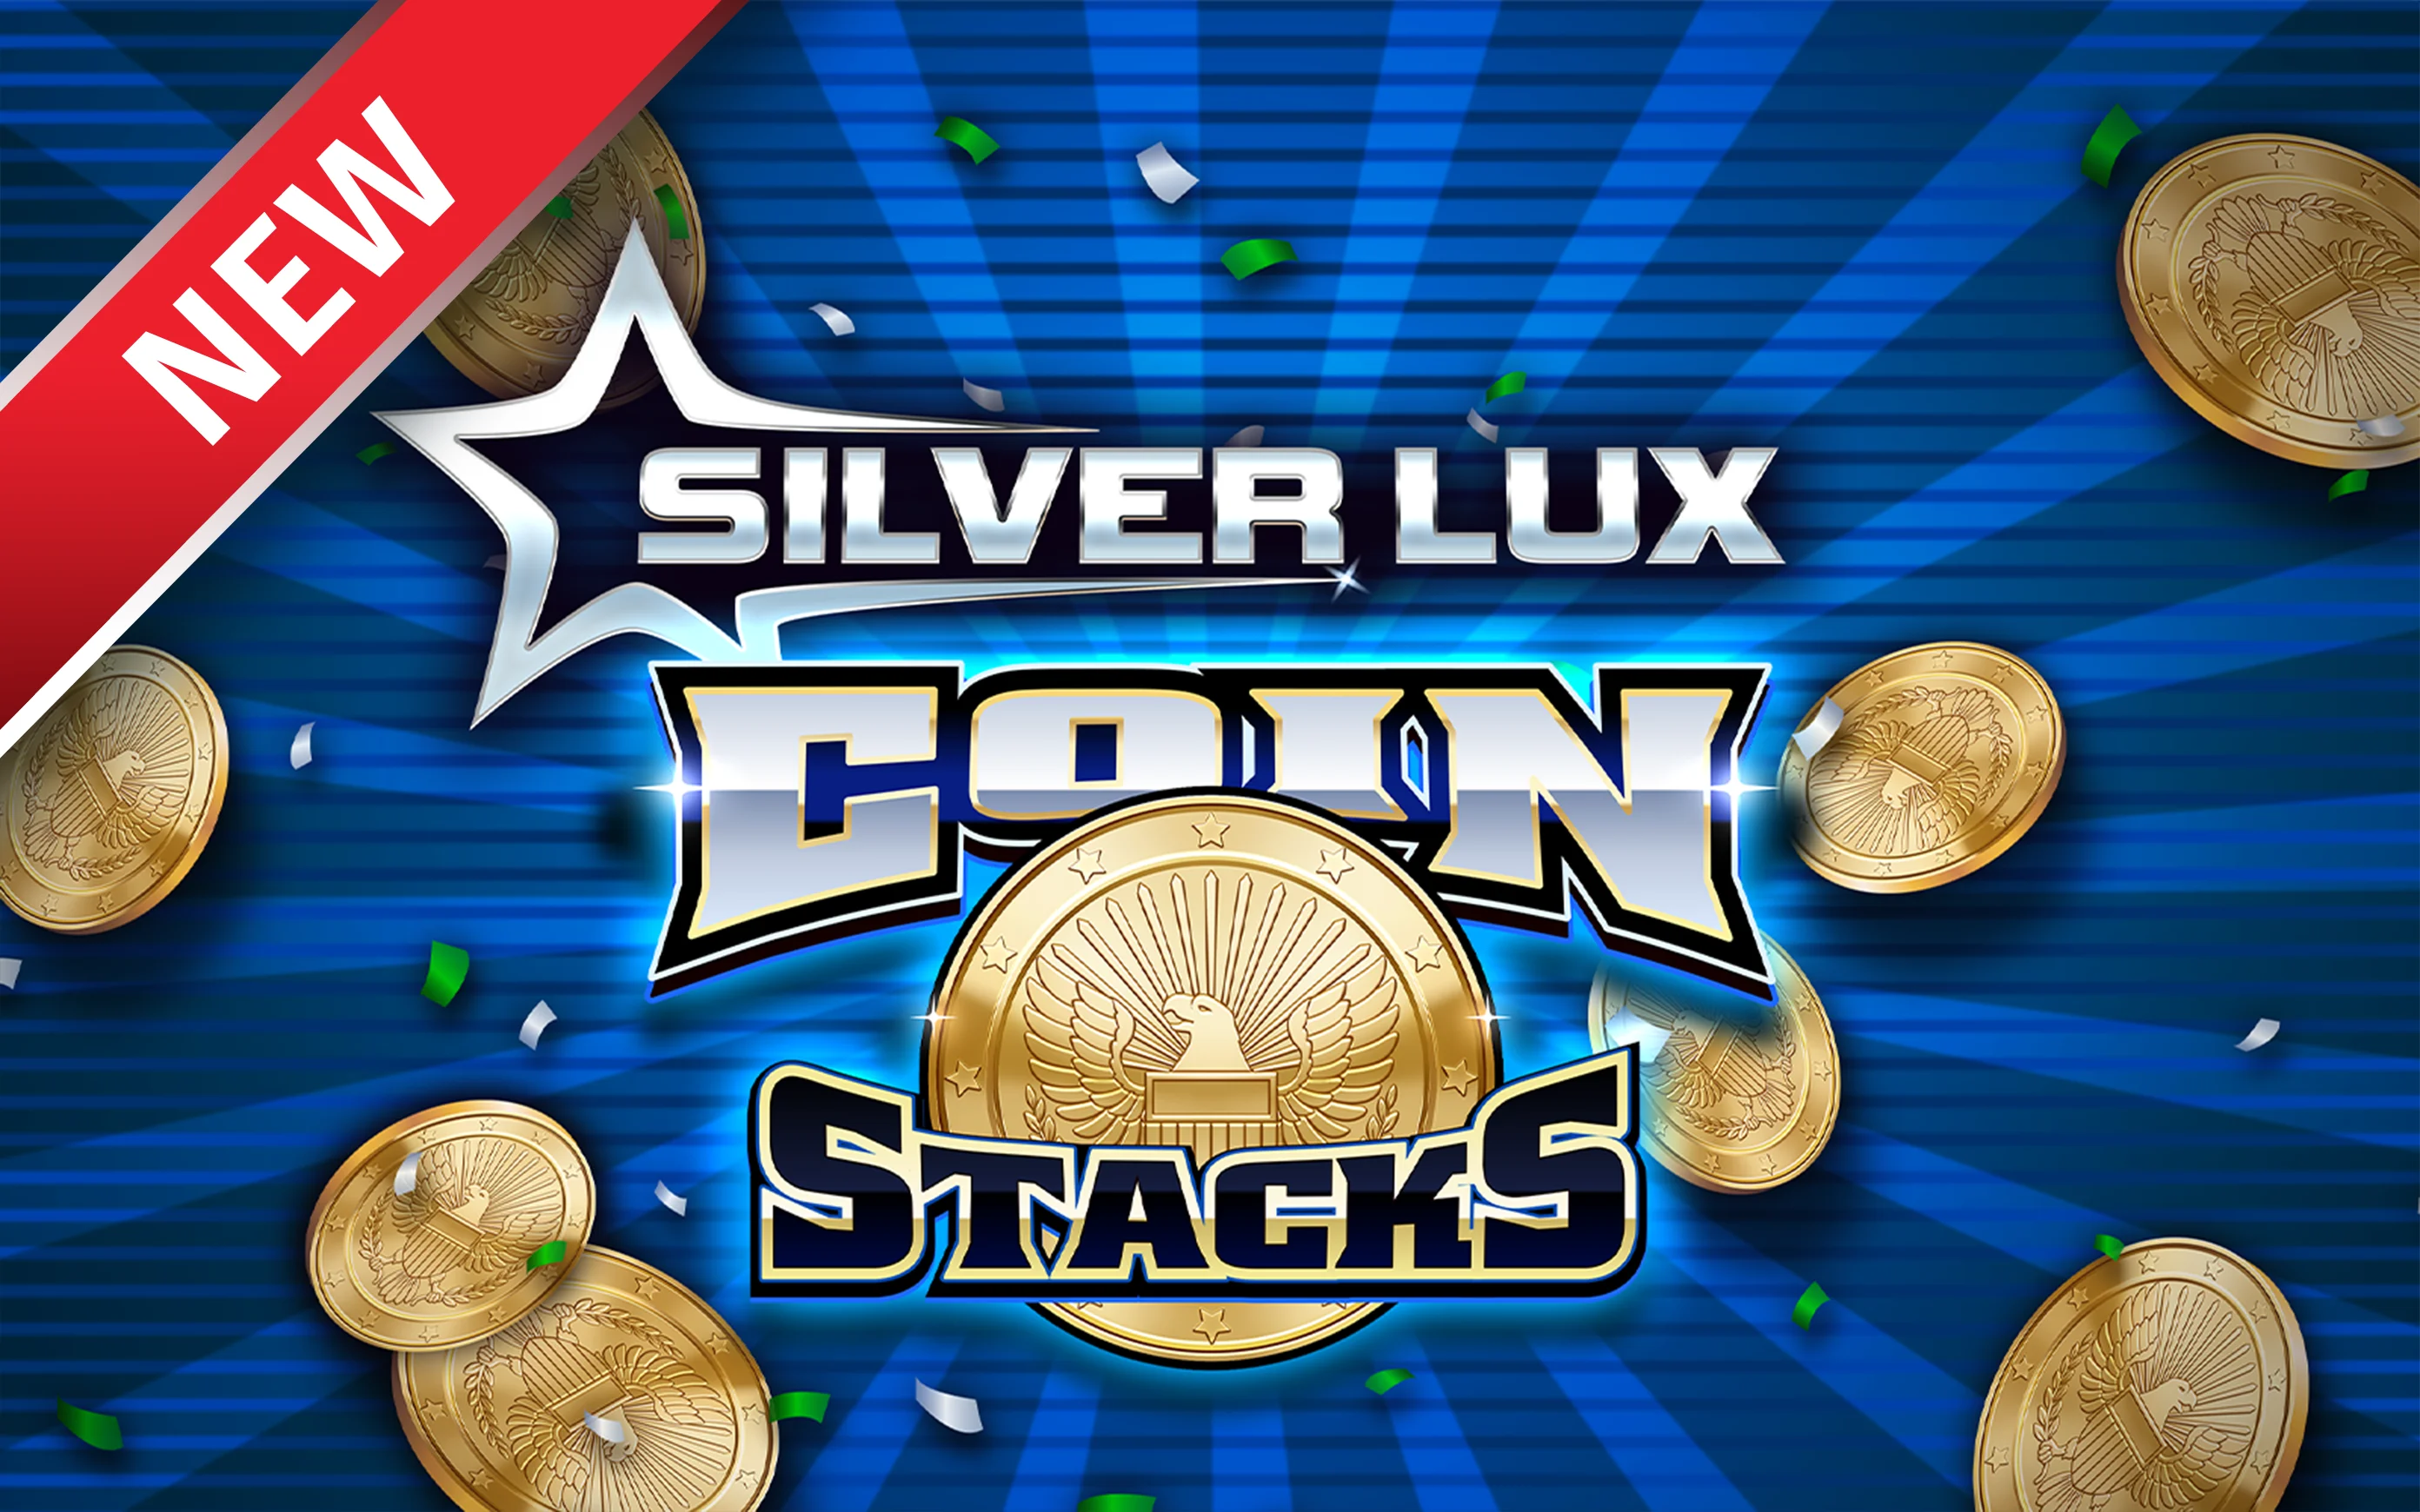 Starcasino.be online casino üzerinden Silver Lux – Coin Stacks oynayın